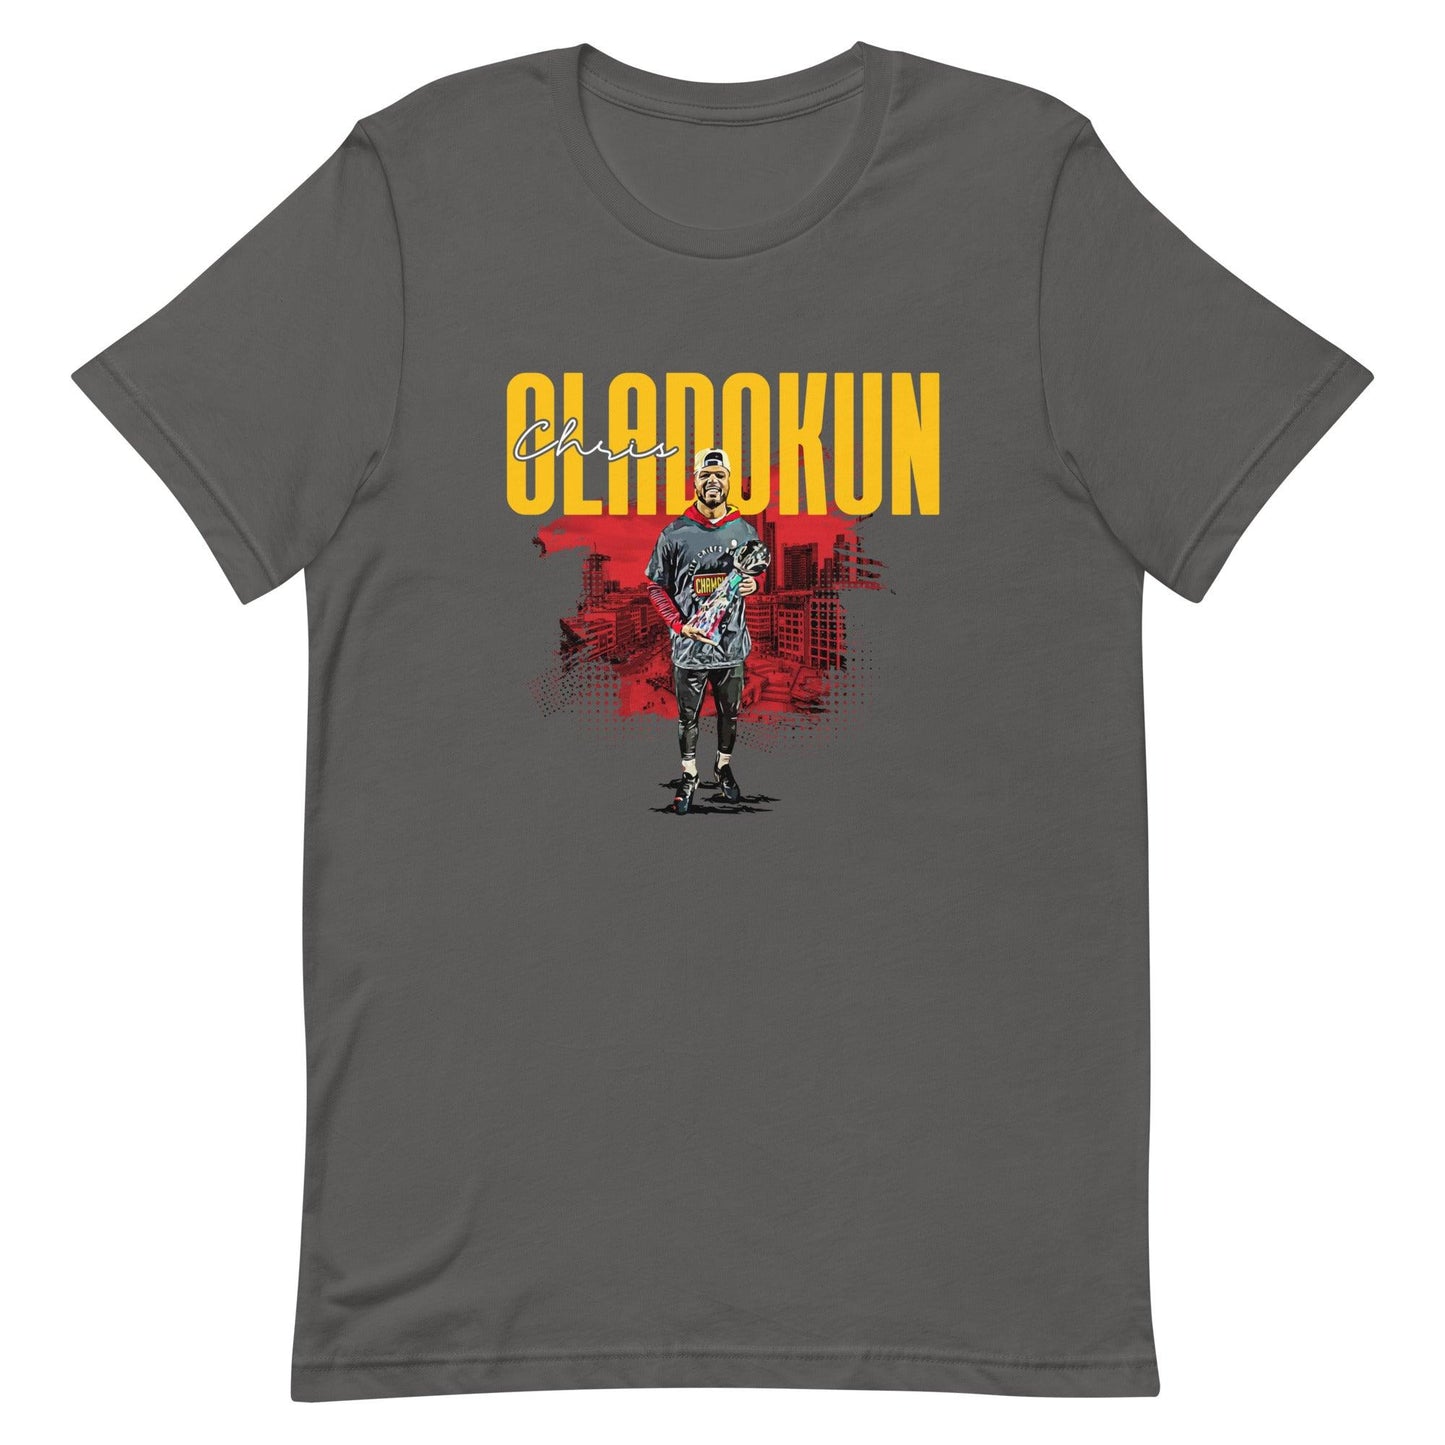 Chris Oladokun "Essential" t-shirt - Fan Arch